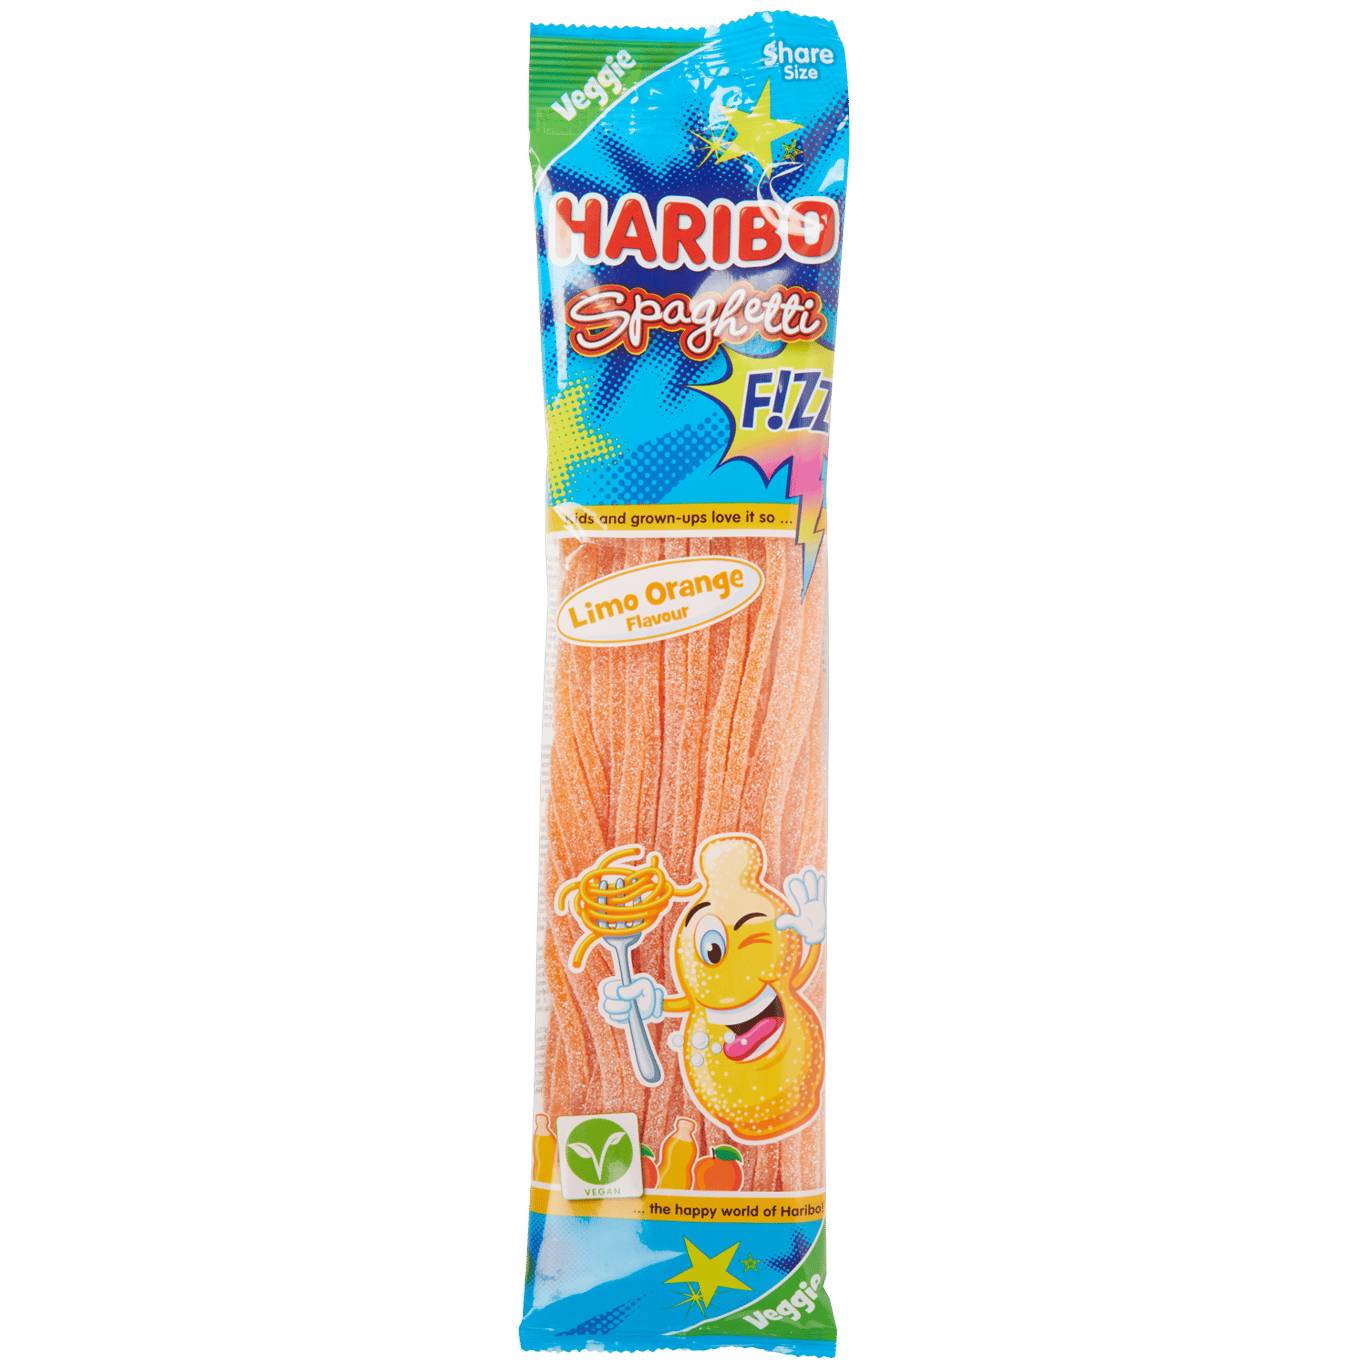 Haribo Spaghetti Fizz Orangenlimonade